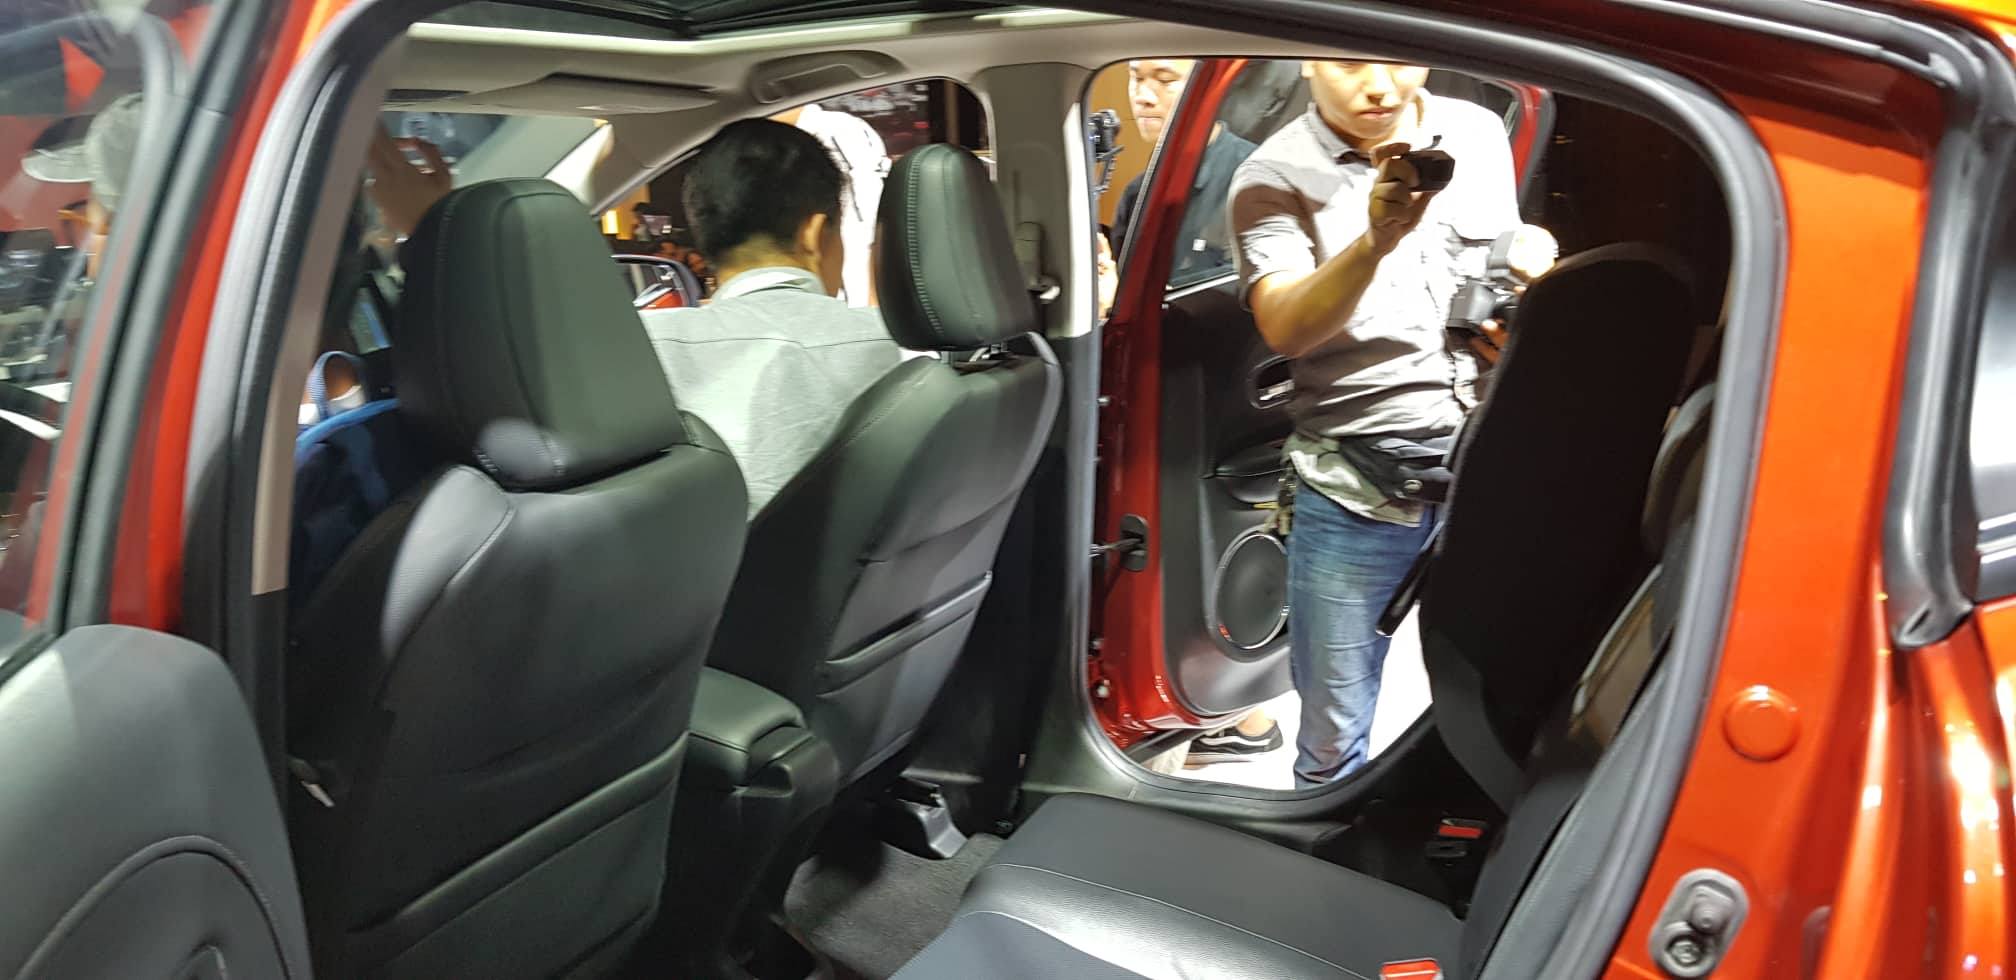 Honda HR-V hoàn toàn mới chính thức vén màn tại Việt Nam, giá từ 786 triệu đồng